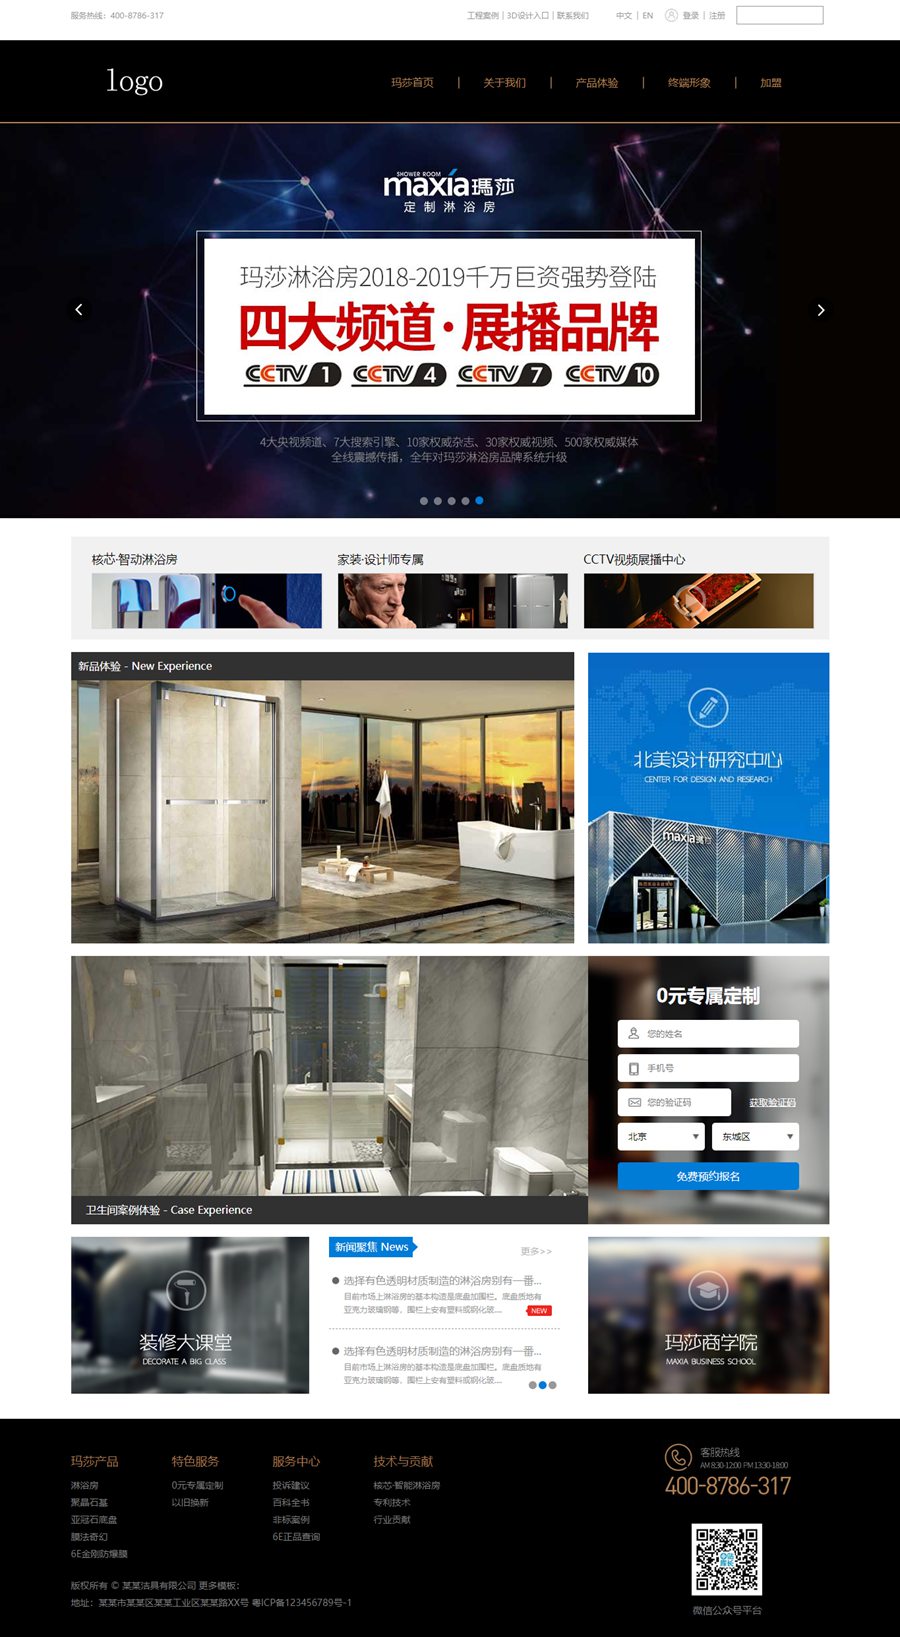 简约的洗浴淋浴用品公司网站首页静态HTML模板